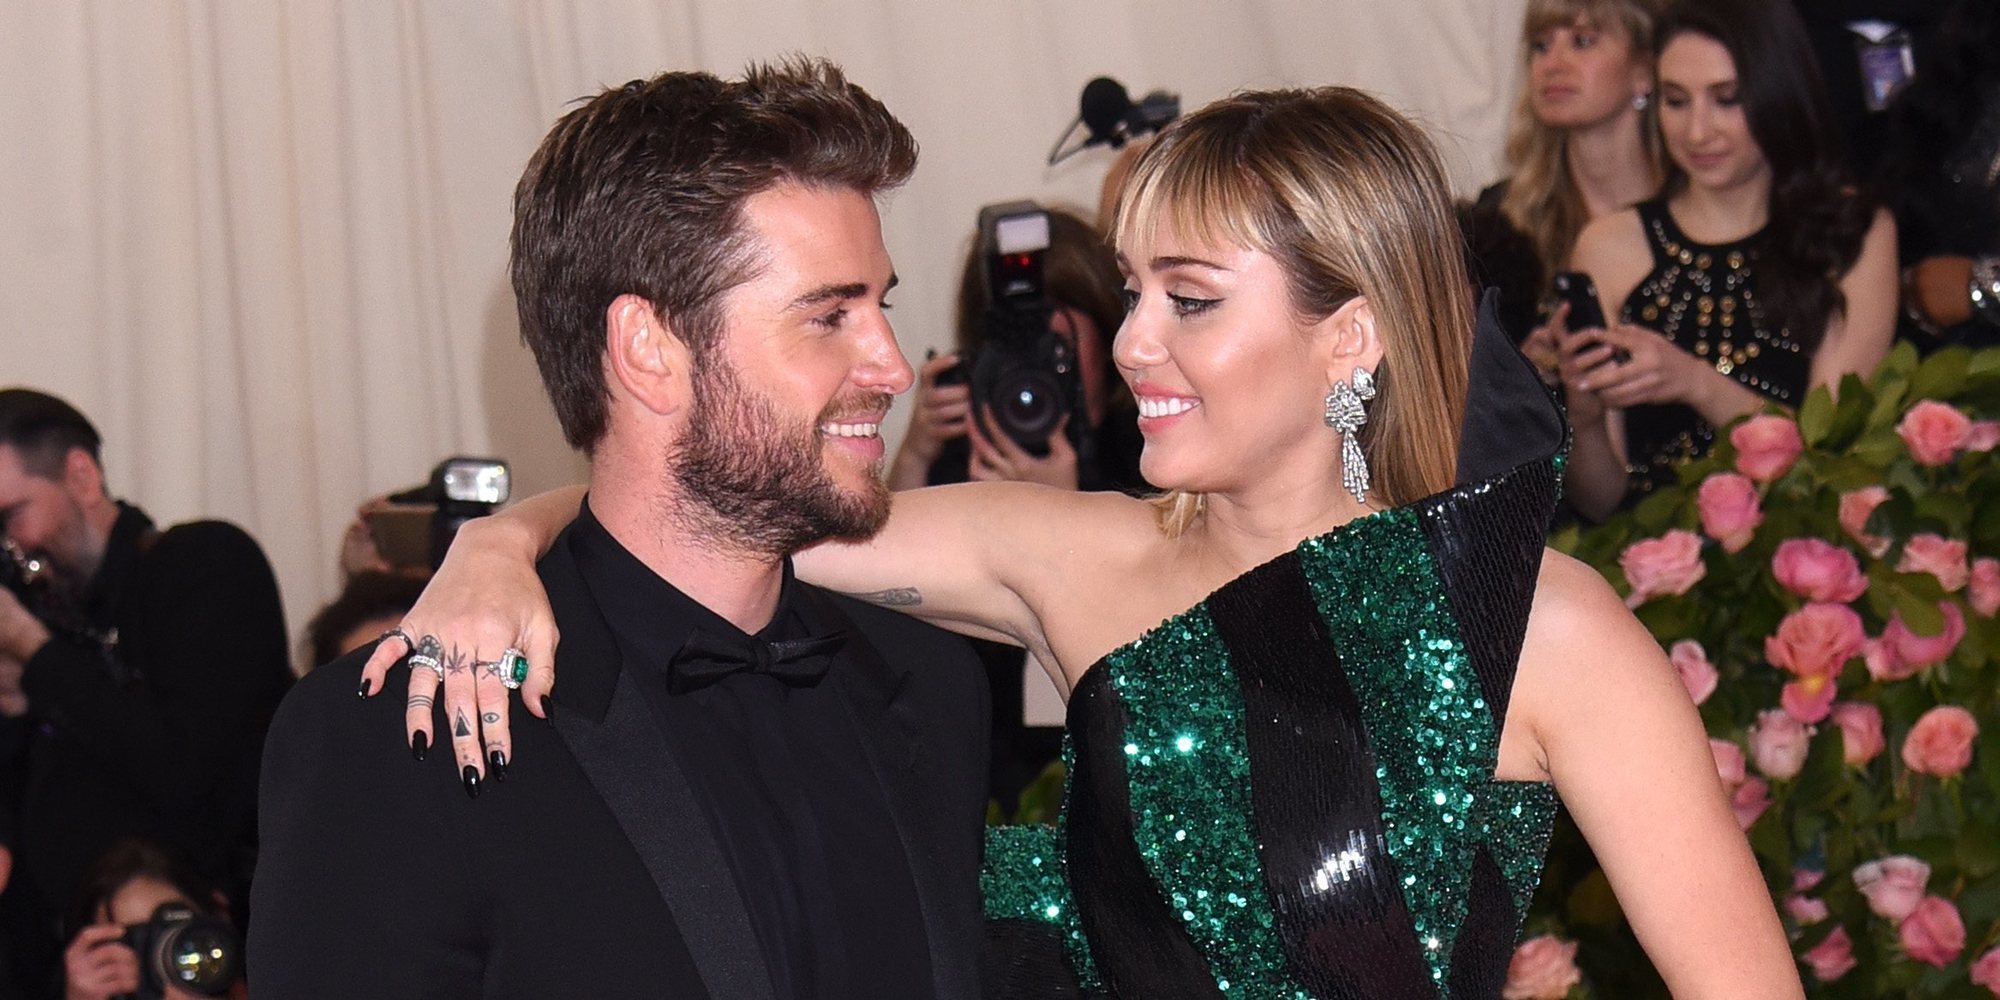 Miley Cyrus explica un año después los verdaderos motivos de su divorcio con Liam Hemsworth